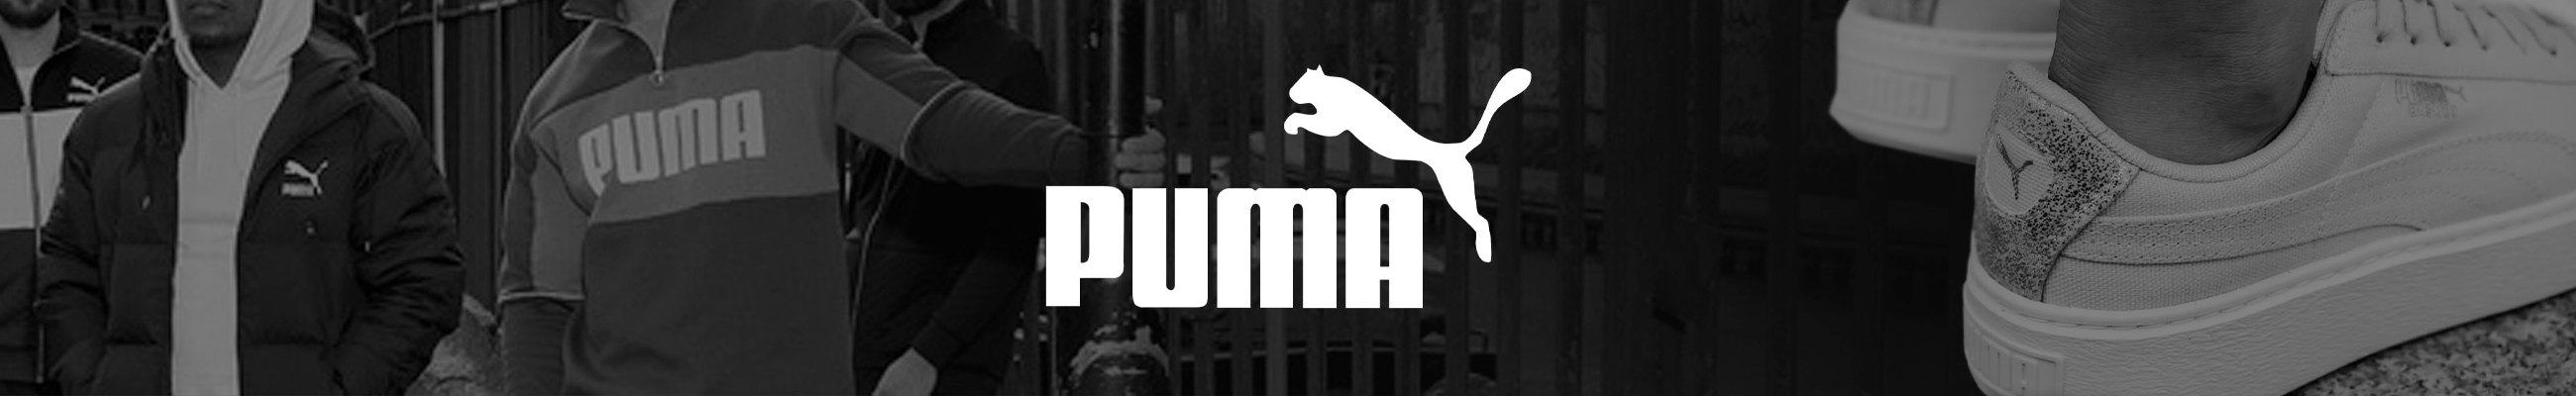 Buy Puma Tops in Saudi, UAE, Kuwait and Qatar